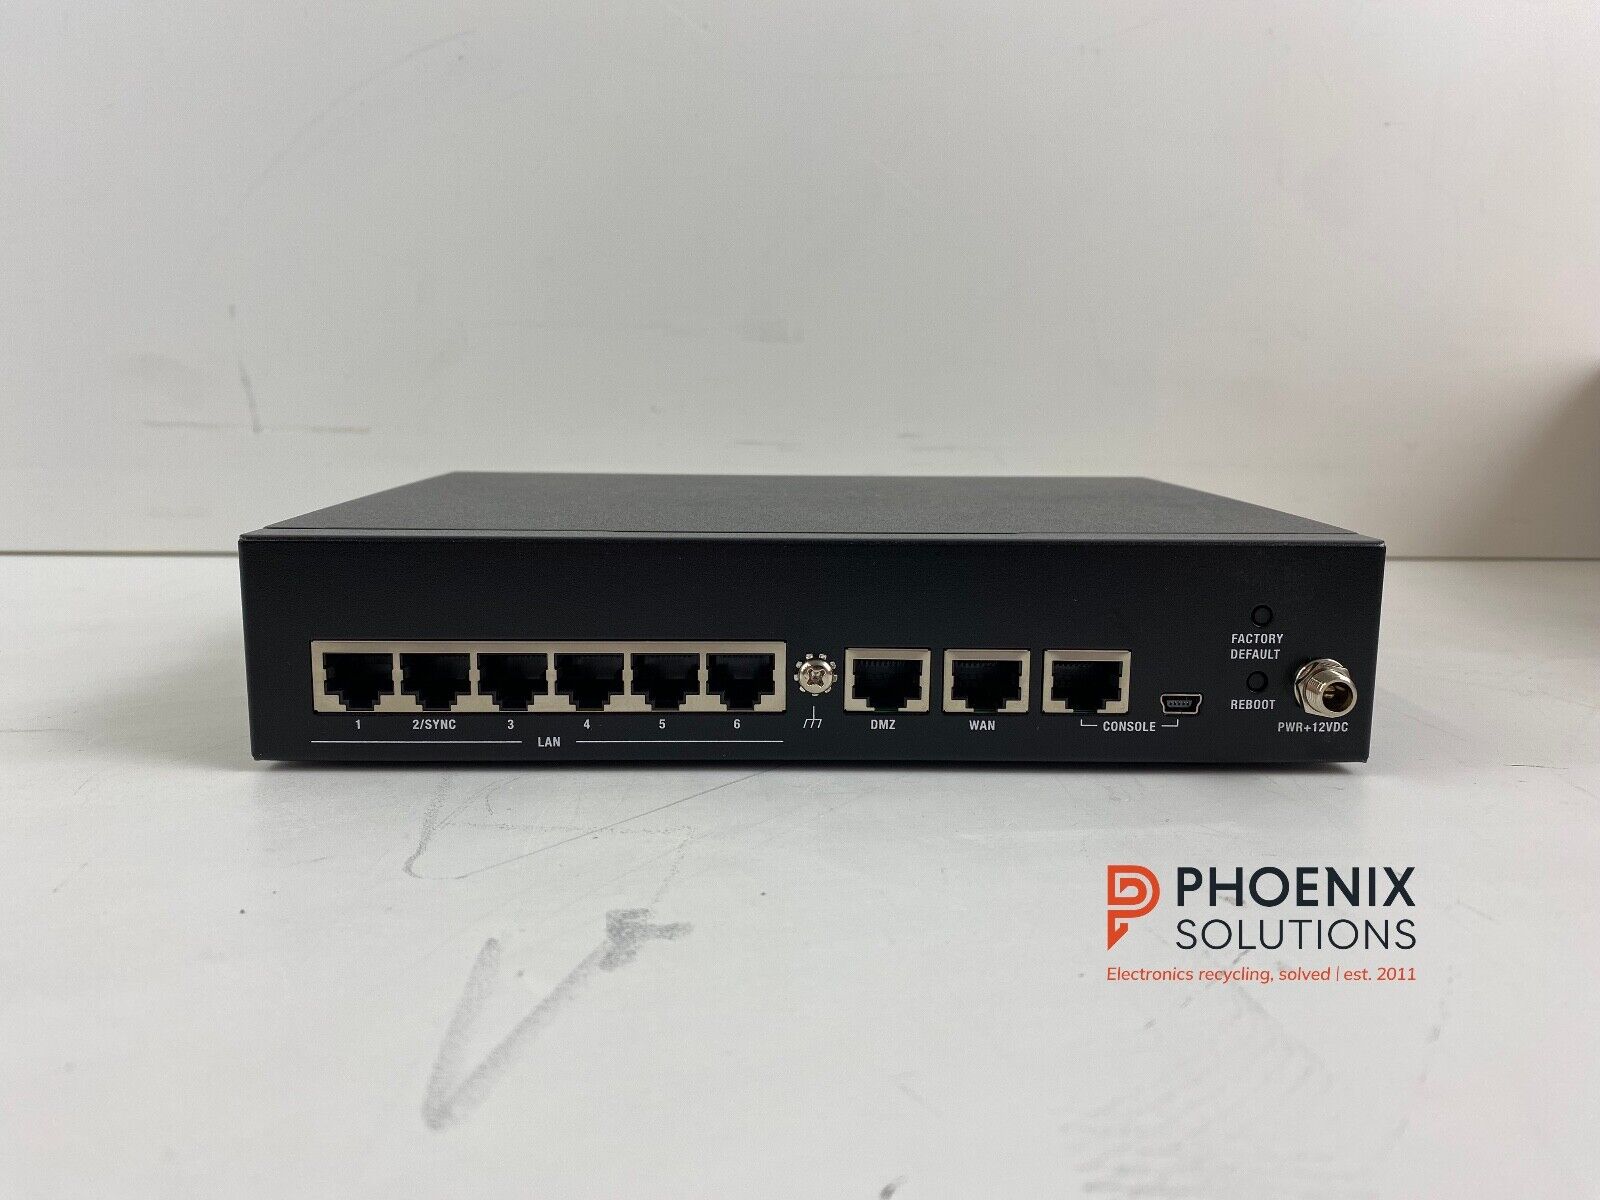 CheckPoint L-71 6 Port WiFi Gigabit Enterprise Firewall